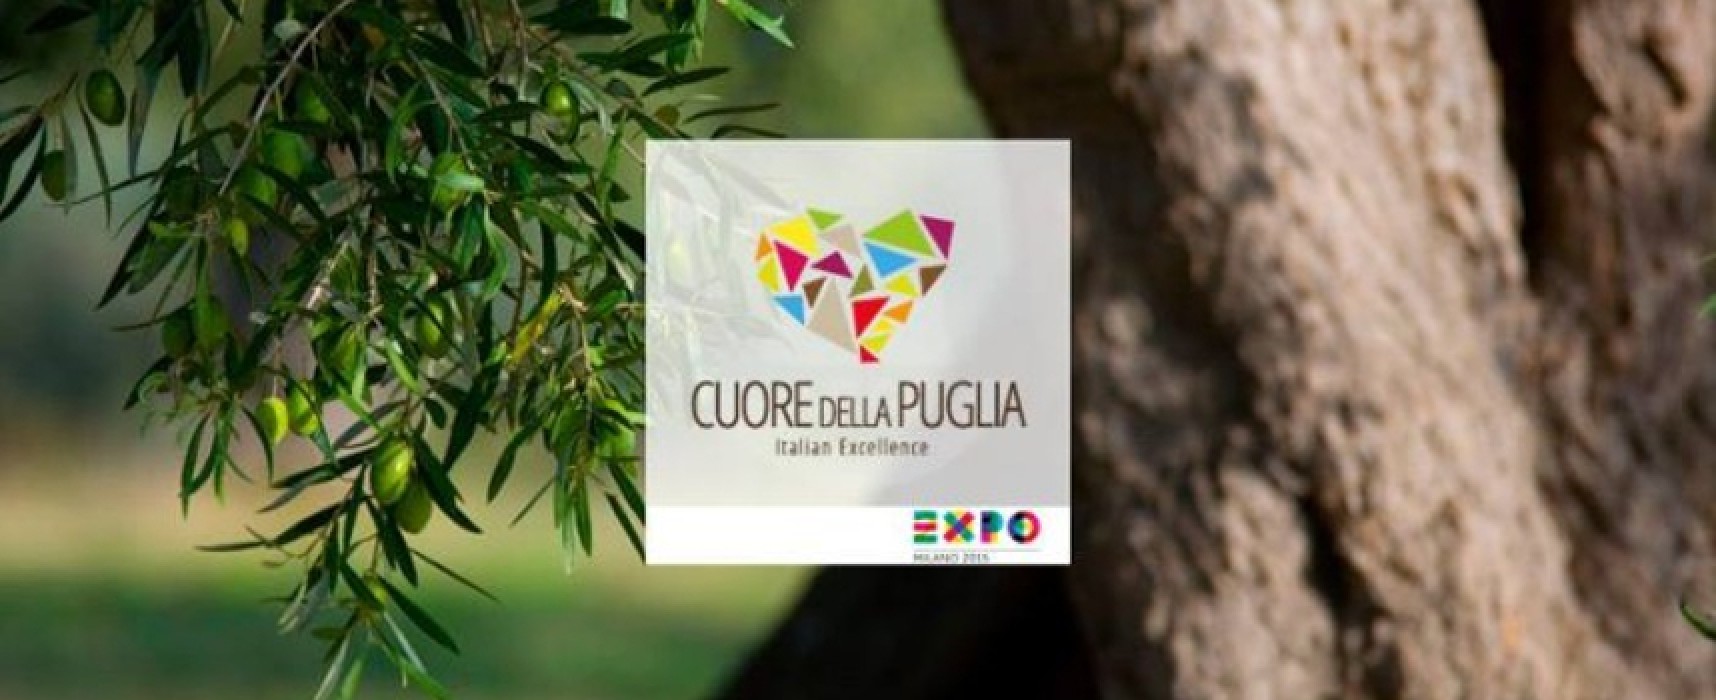 Grazie al “Cuore della Puglia” i sospiri e le eccellenze di Bisceglie approdano all’Expo 2015